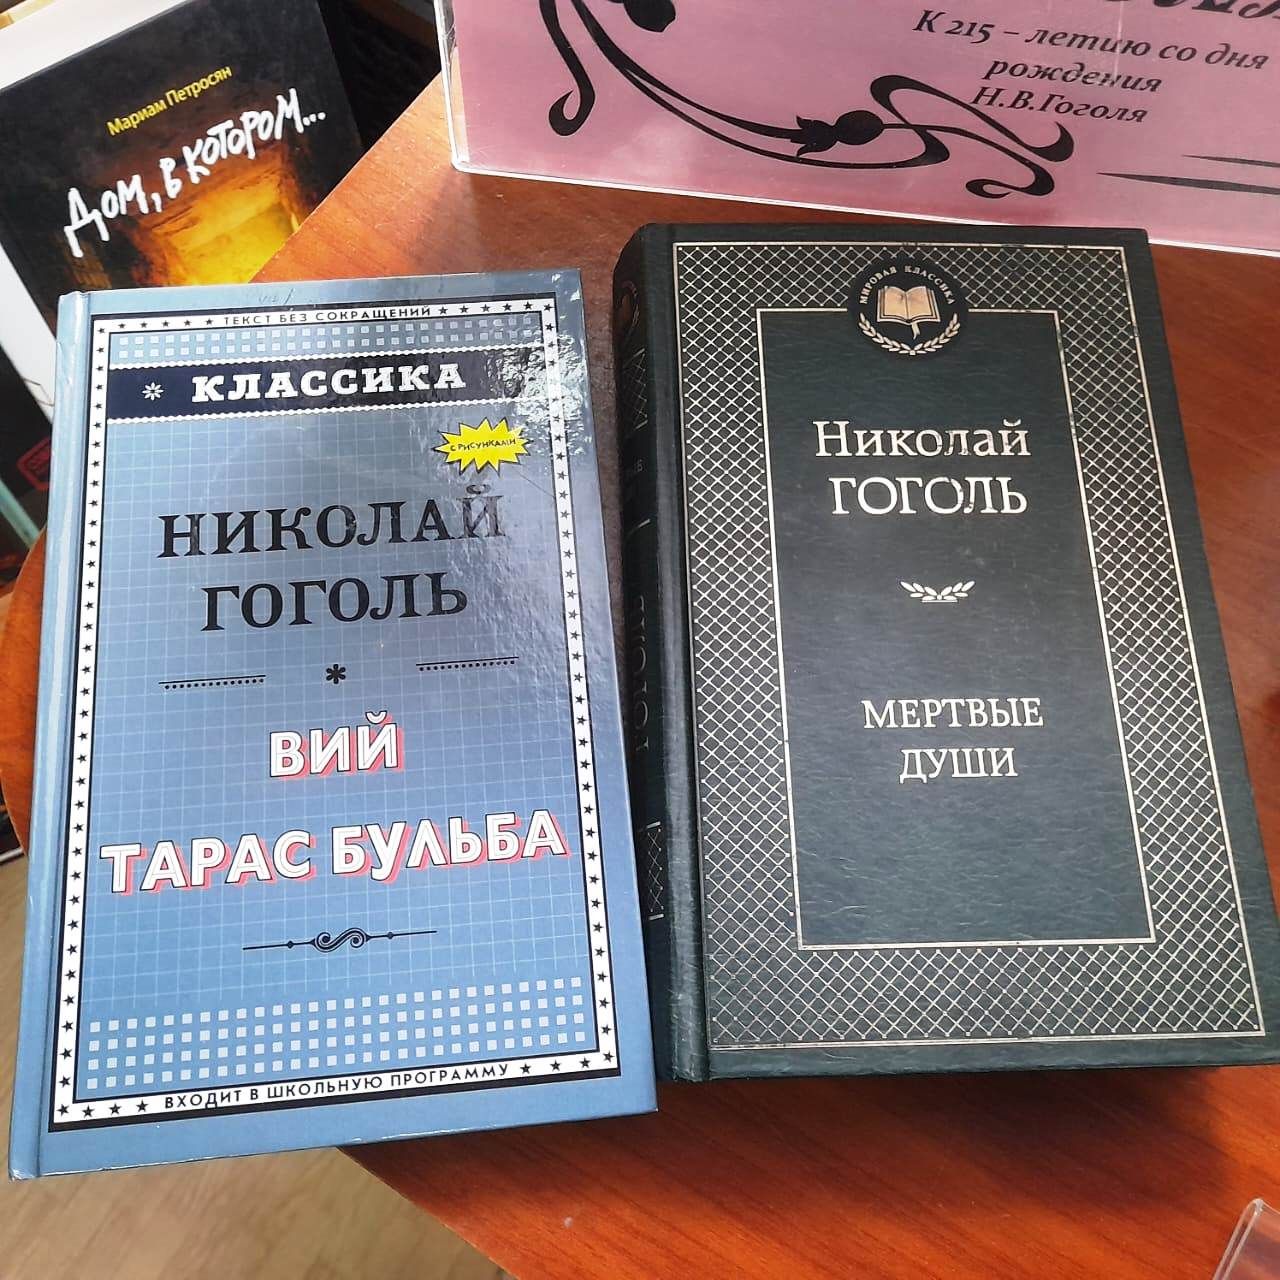 В Лаишевской библиотеке подготовлена литературная выставка «Загадка великого Гоголя»